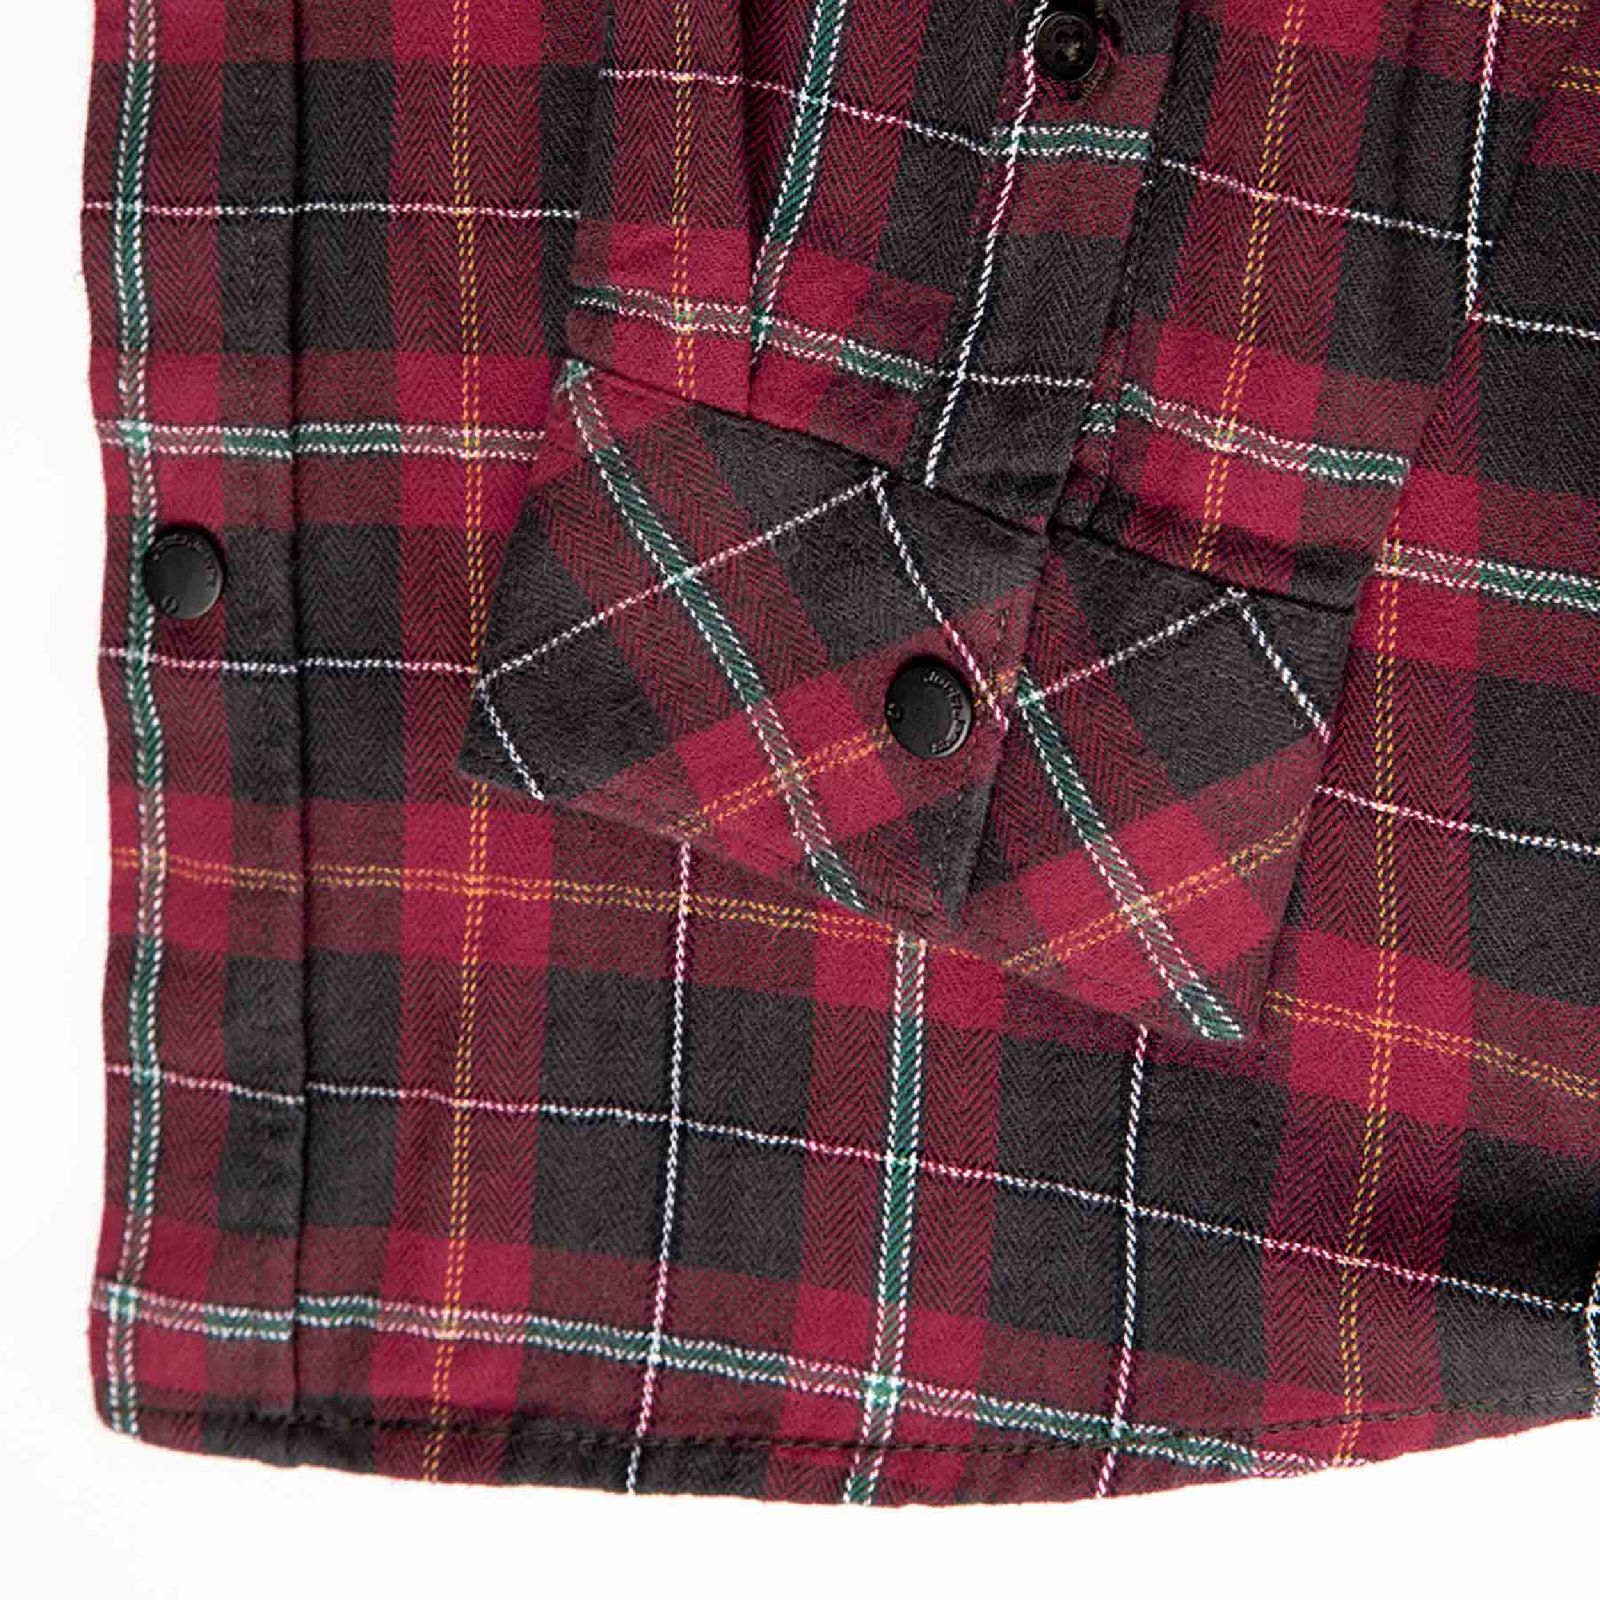 پیراهن آستین بلند مردانه جوتی جینز مدل چهارخانه کد 303095 رنگ قرمز -  - 4